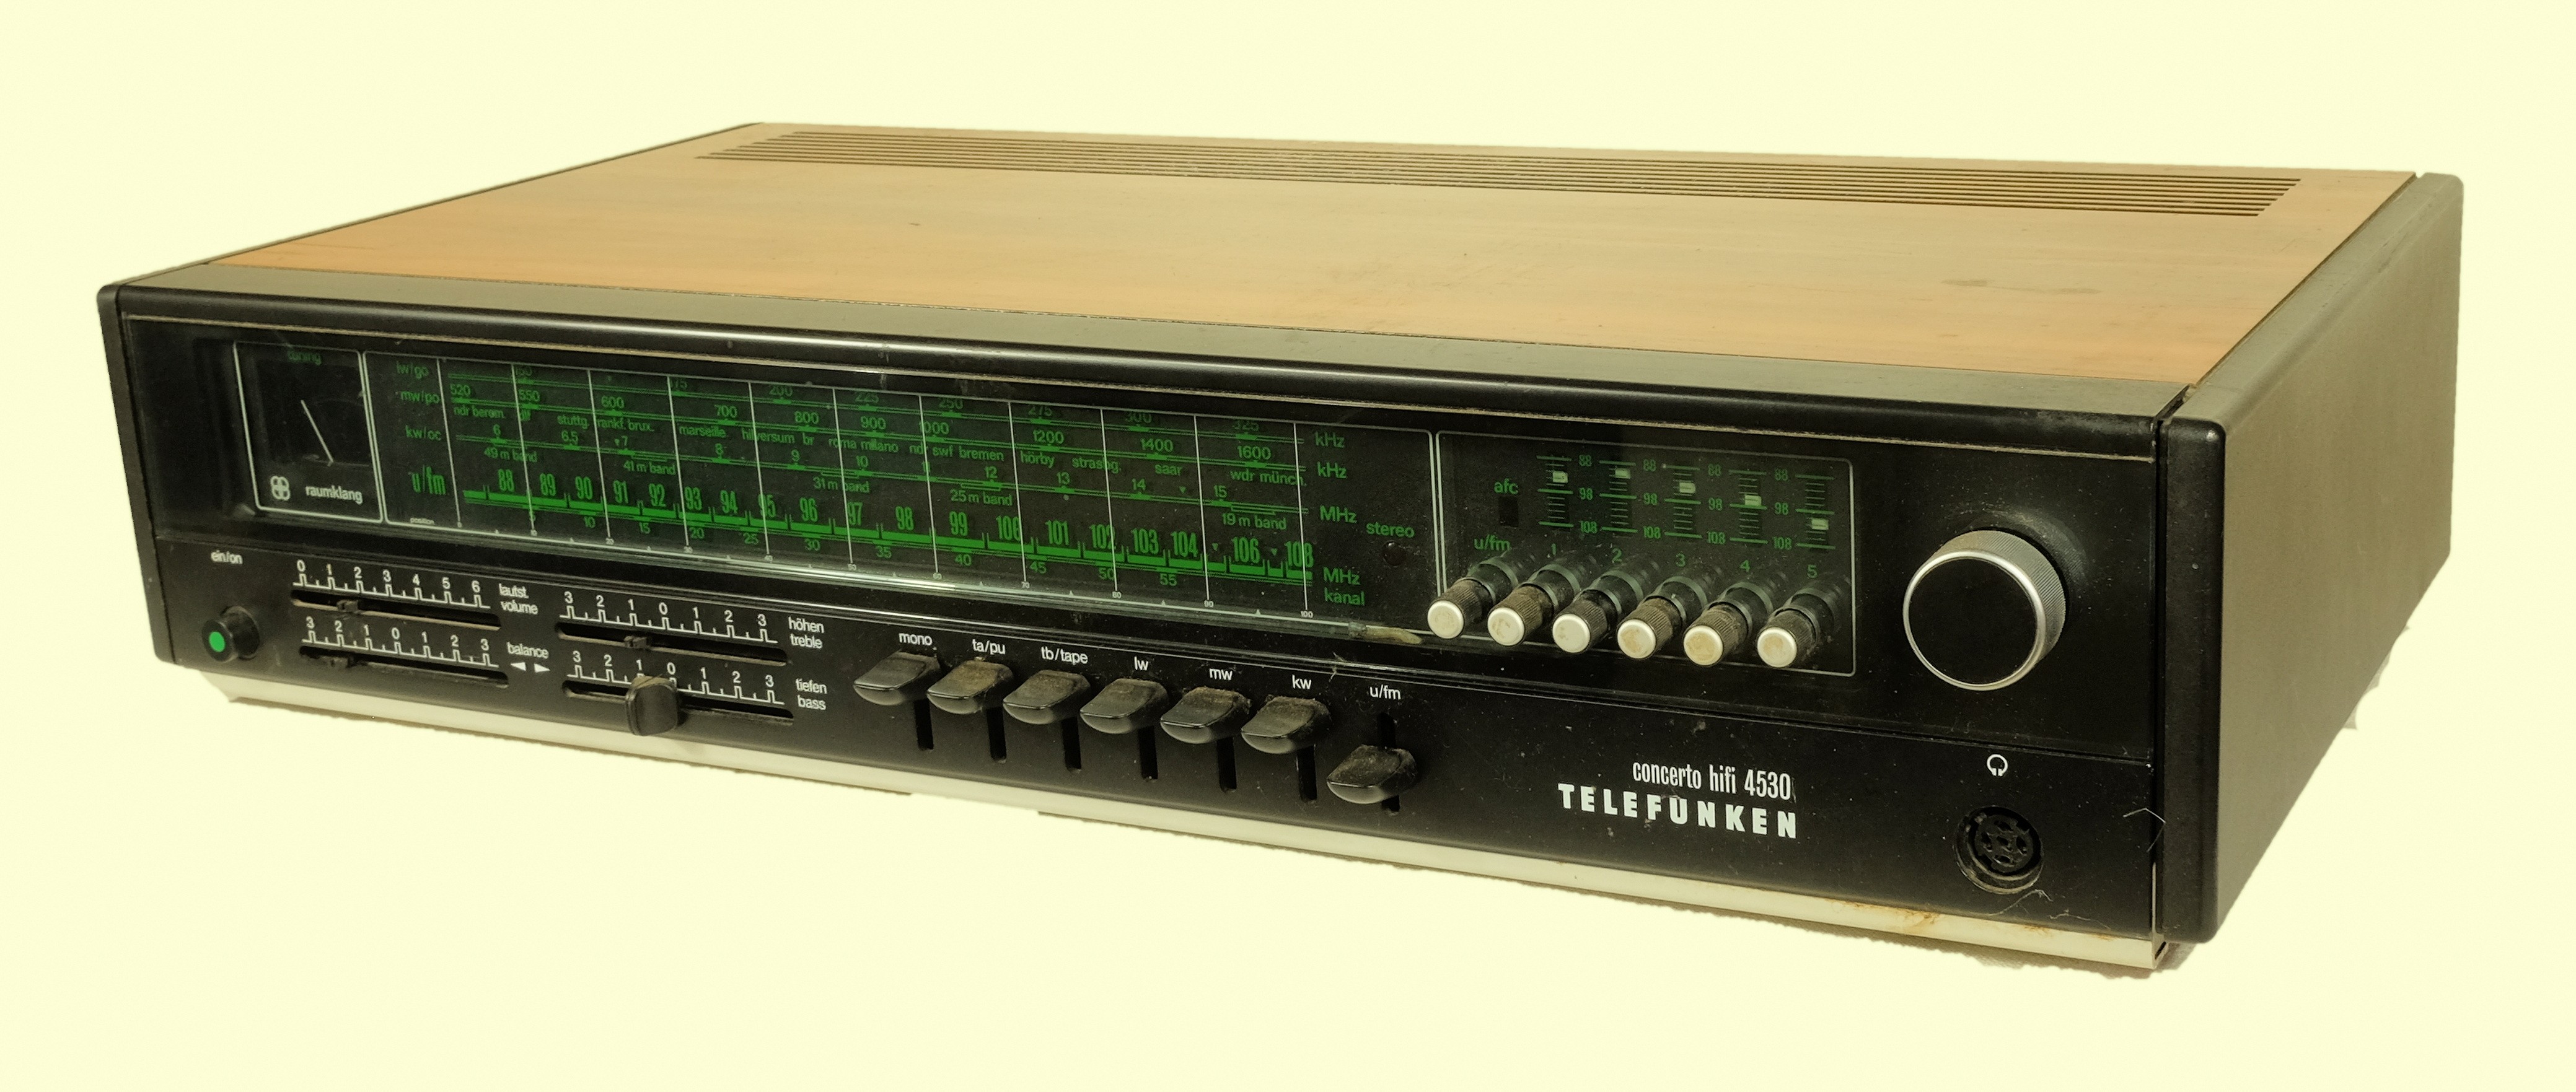 Transistorenradio Telefunken Concerto HiFi 4530 (Volkskunde- und Freilichtmuseum Roscheider Hof CC0)